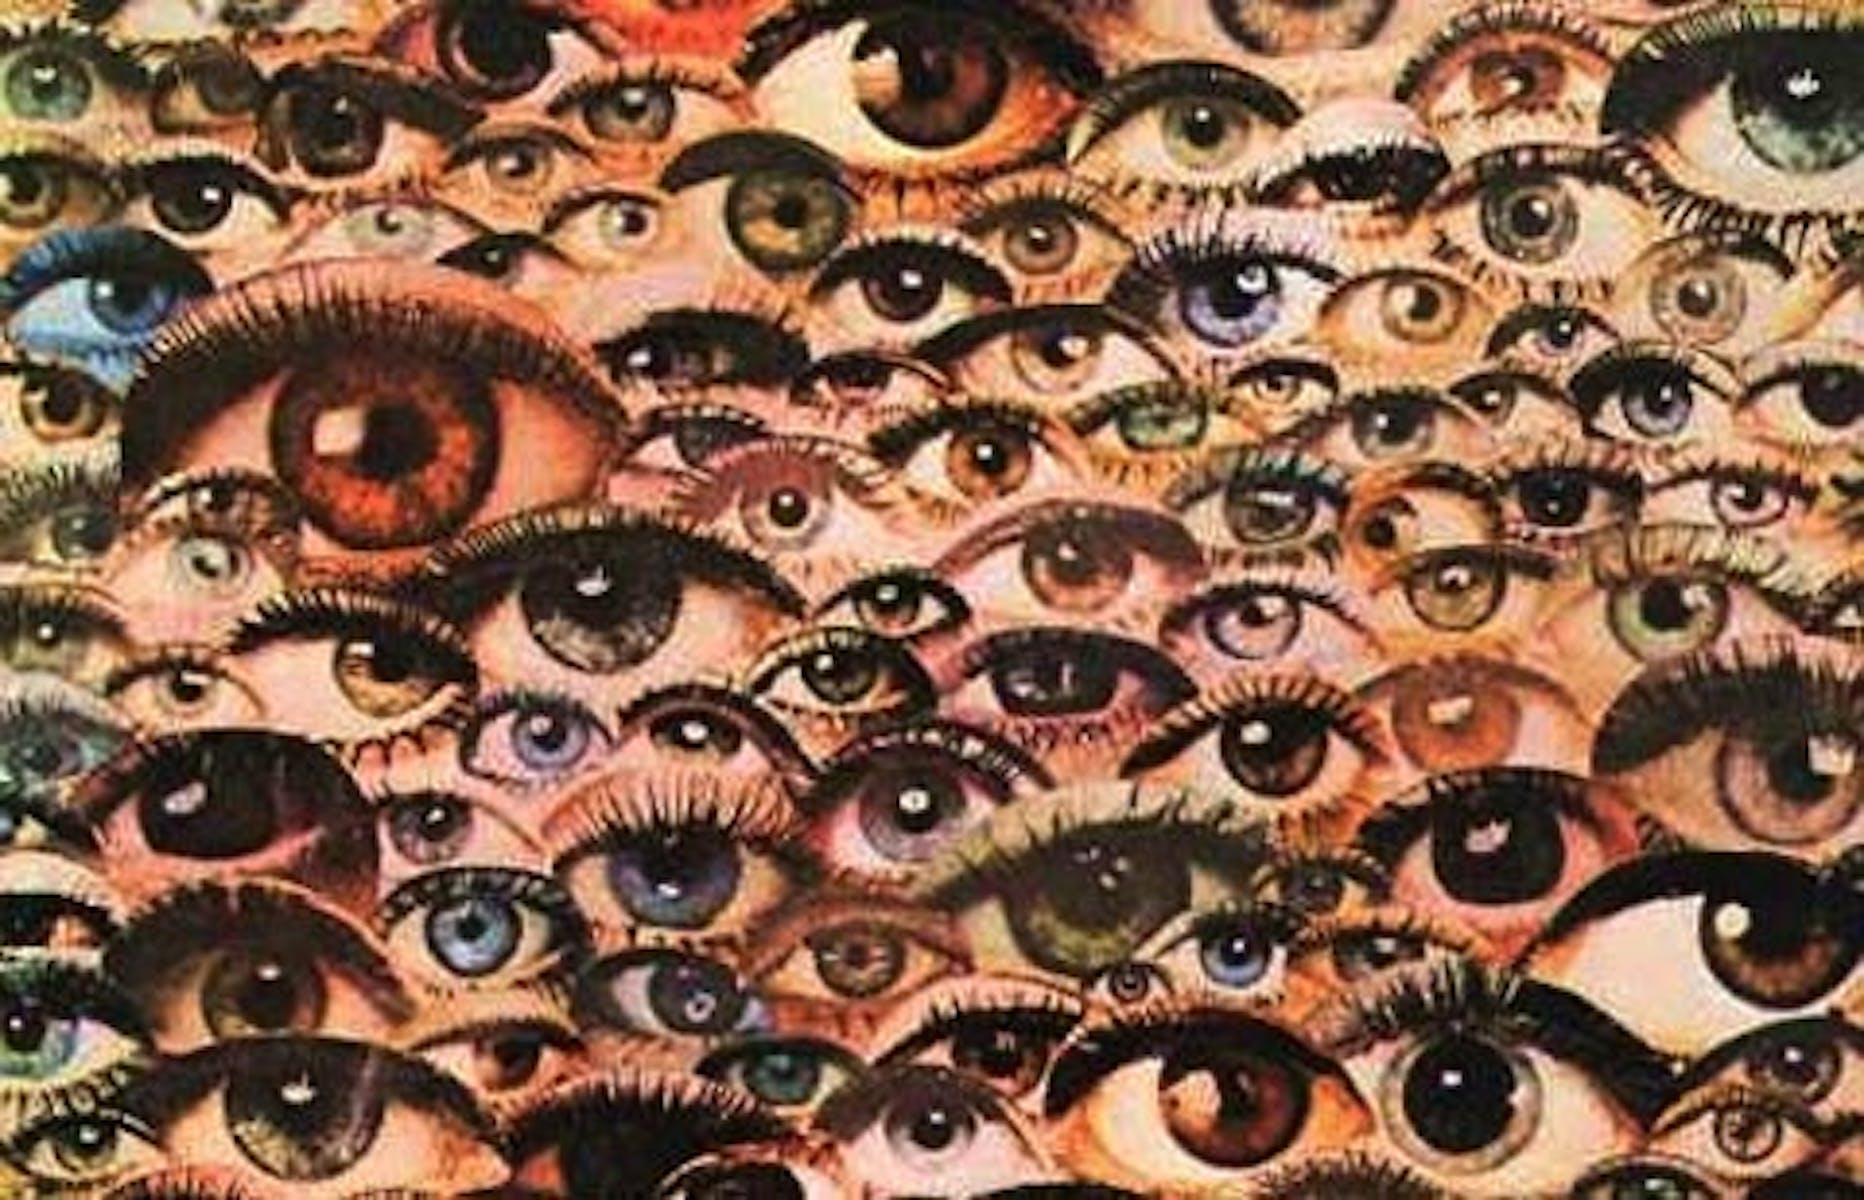 Слишком много глазам. Много глаз. Множество глаз. Глаза много глаз. Картина с множеством глаз.